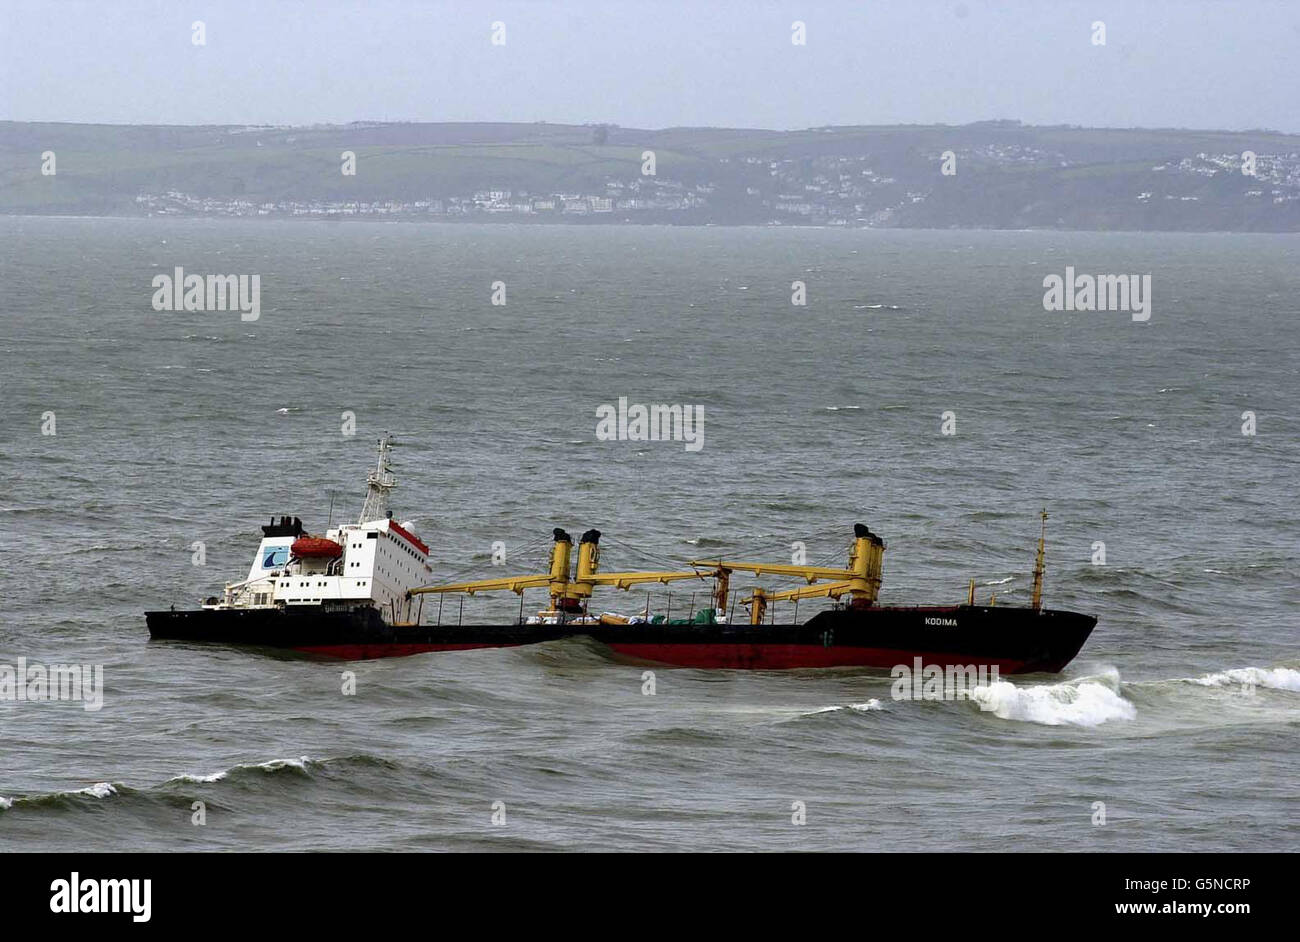 Tanker Kodima stranded in Whitsand Bay Foto Stock